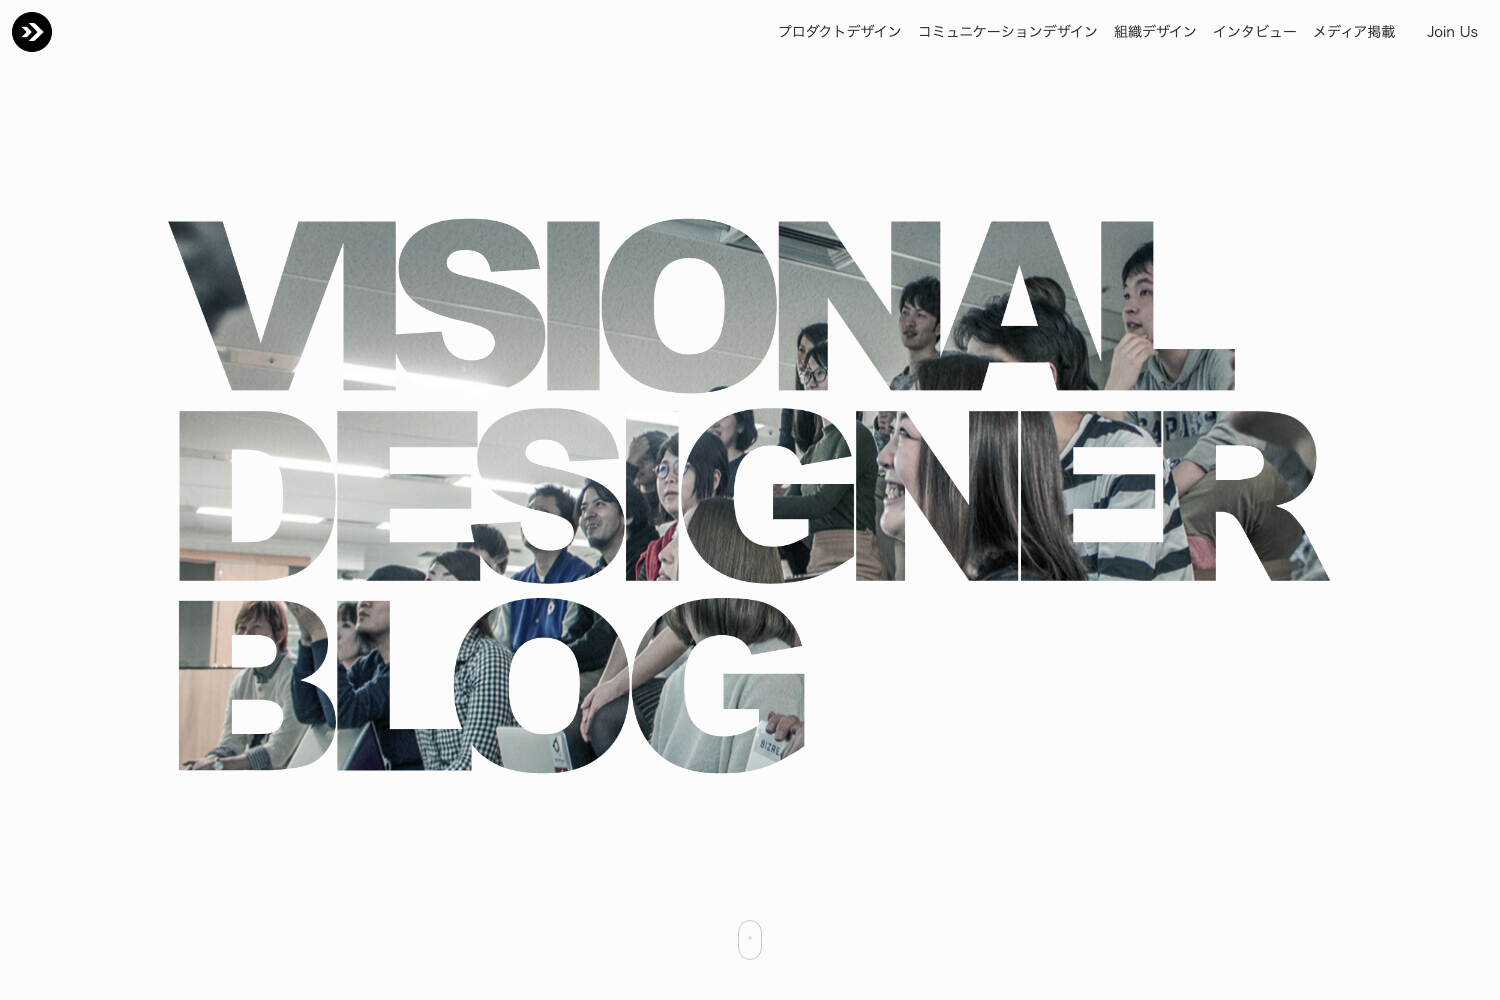 Visional Designer Blog